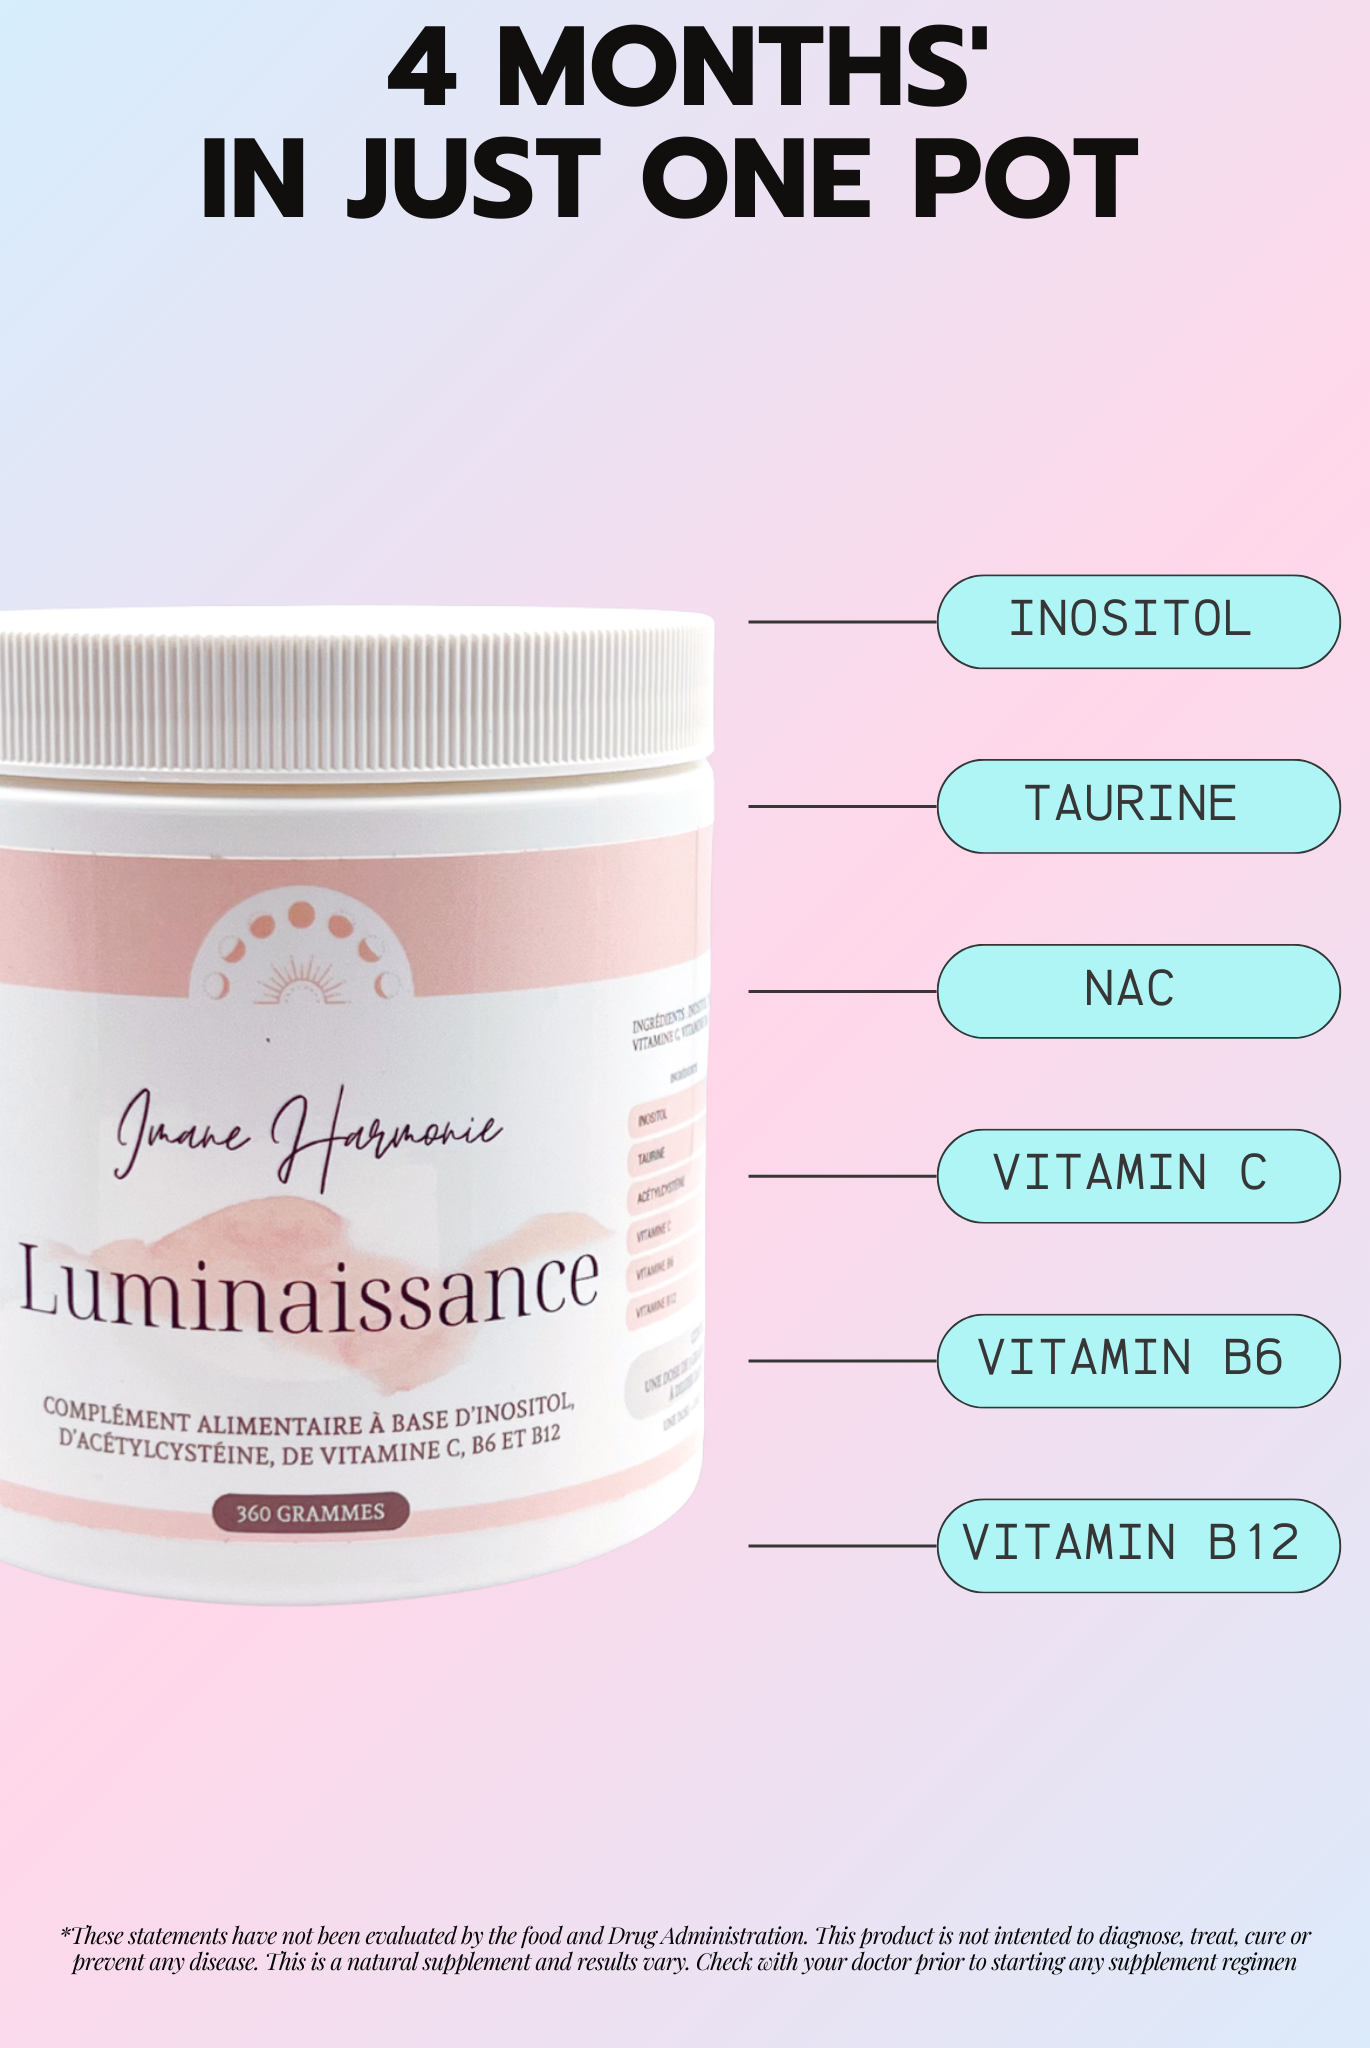 Primary supplements of Luminaissance : Inositol, taurine, NAC, vitamin C, vitamine B6, vitamin B12